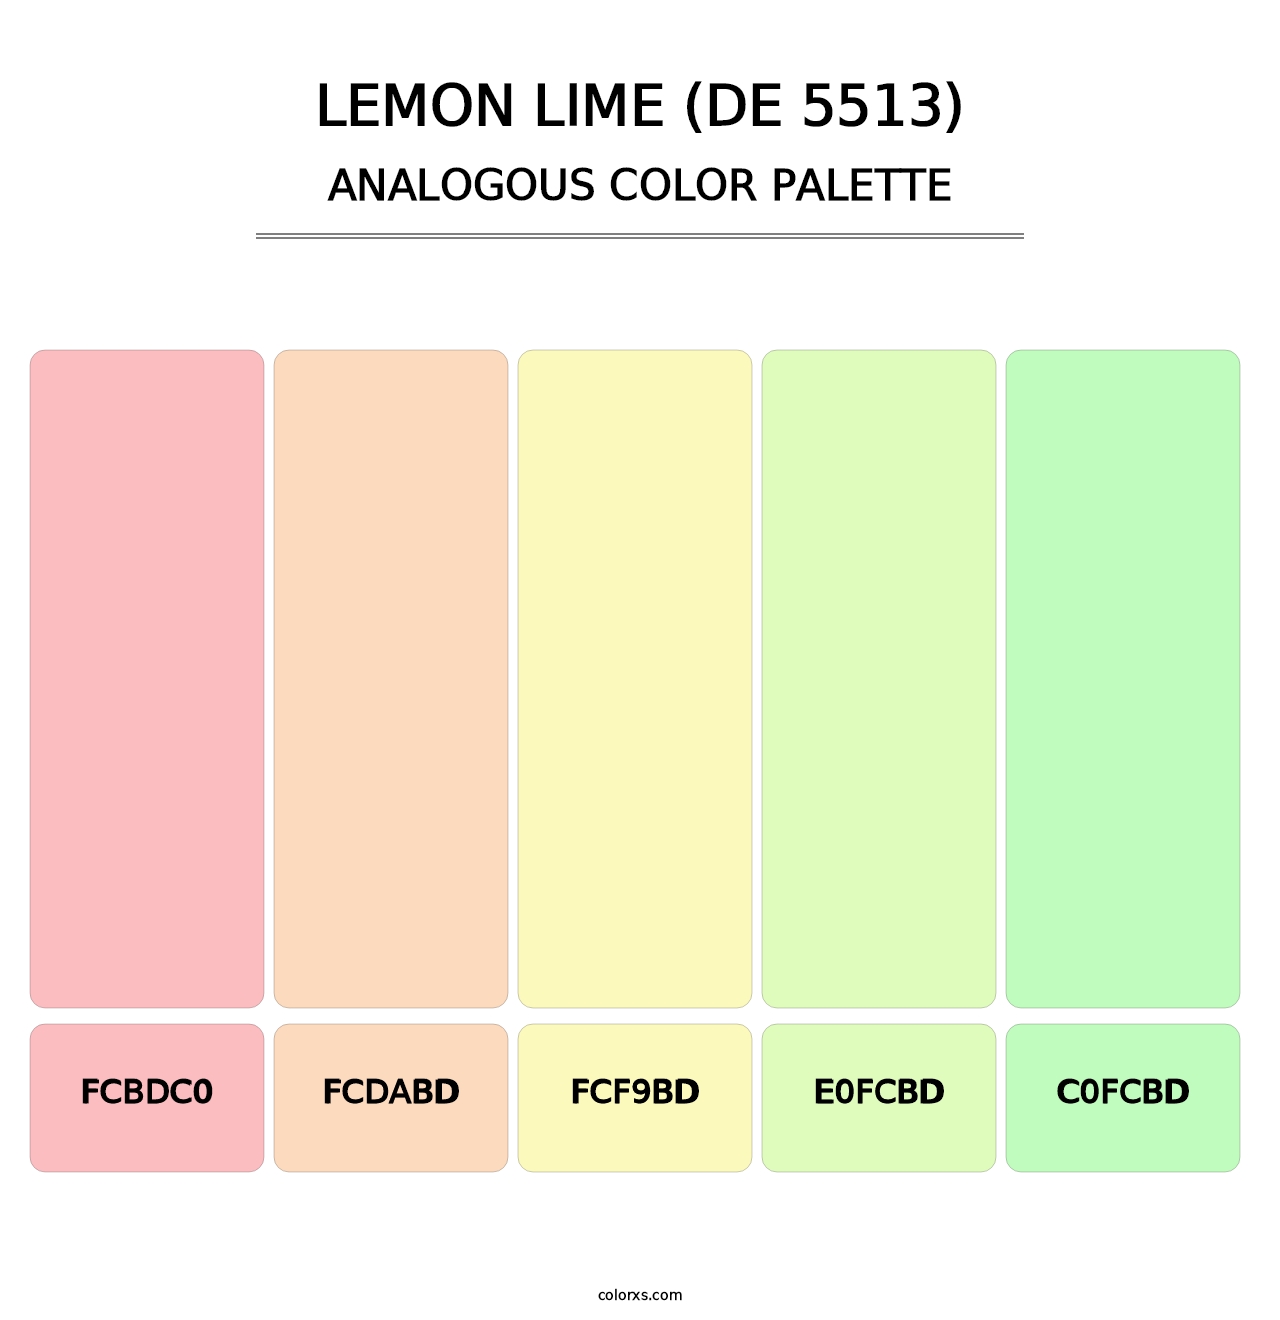 Lemon Lime (DE 5513) - Analogous Color Palette